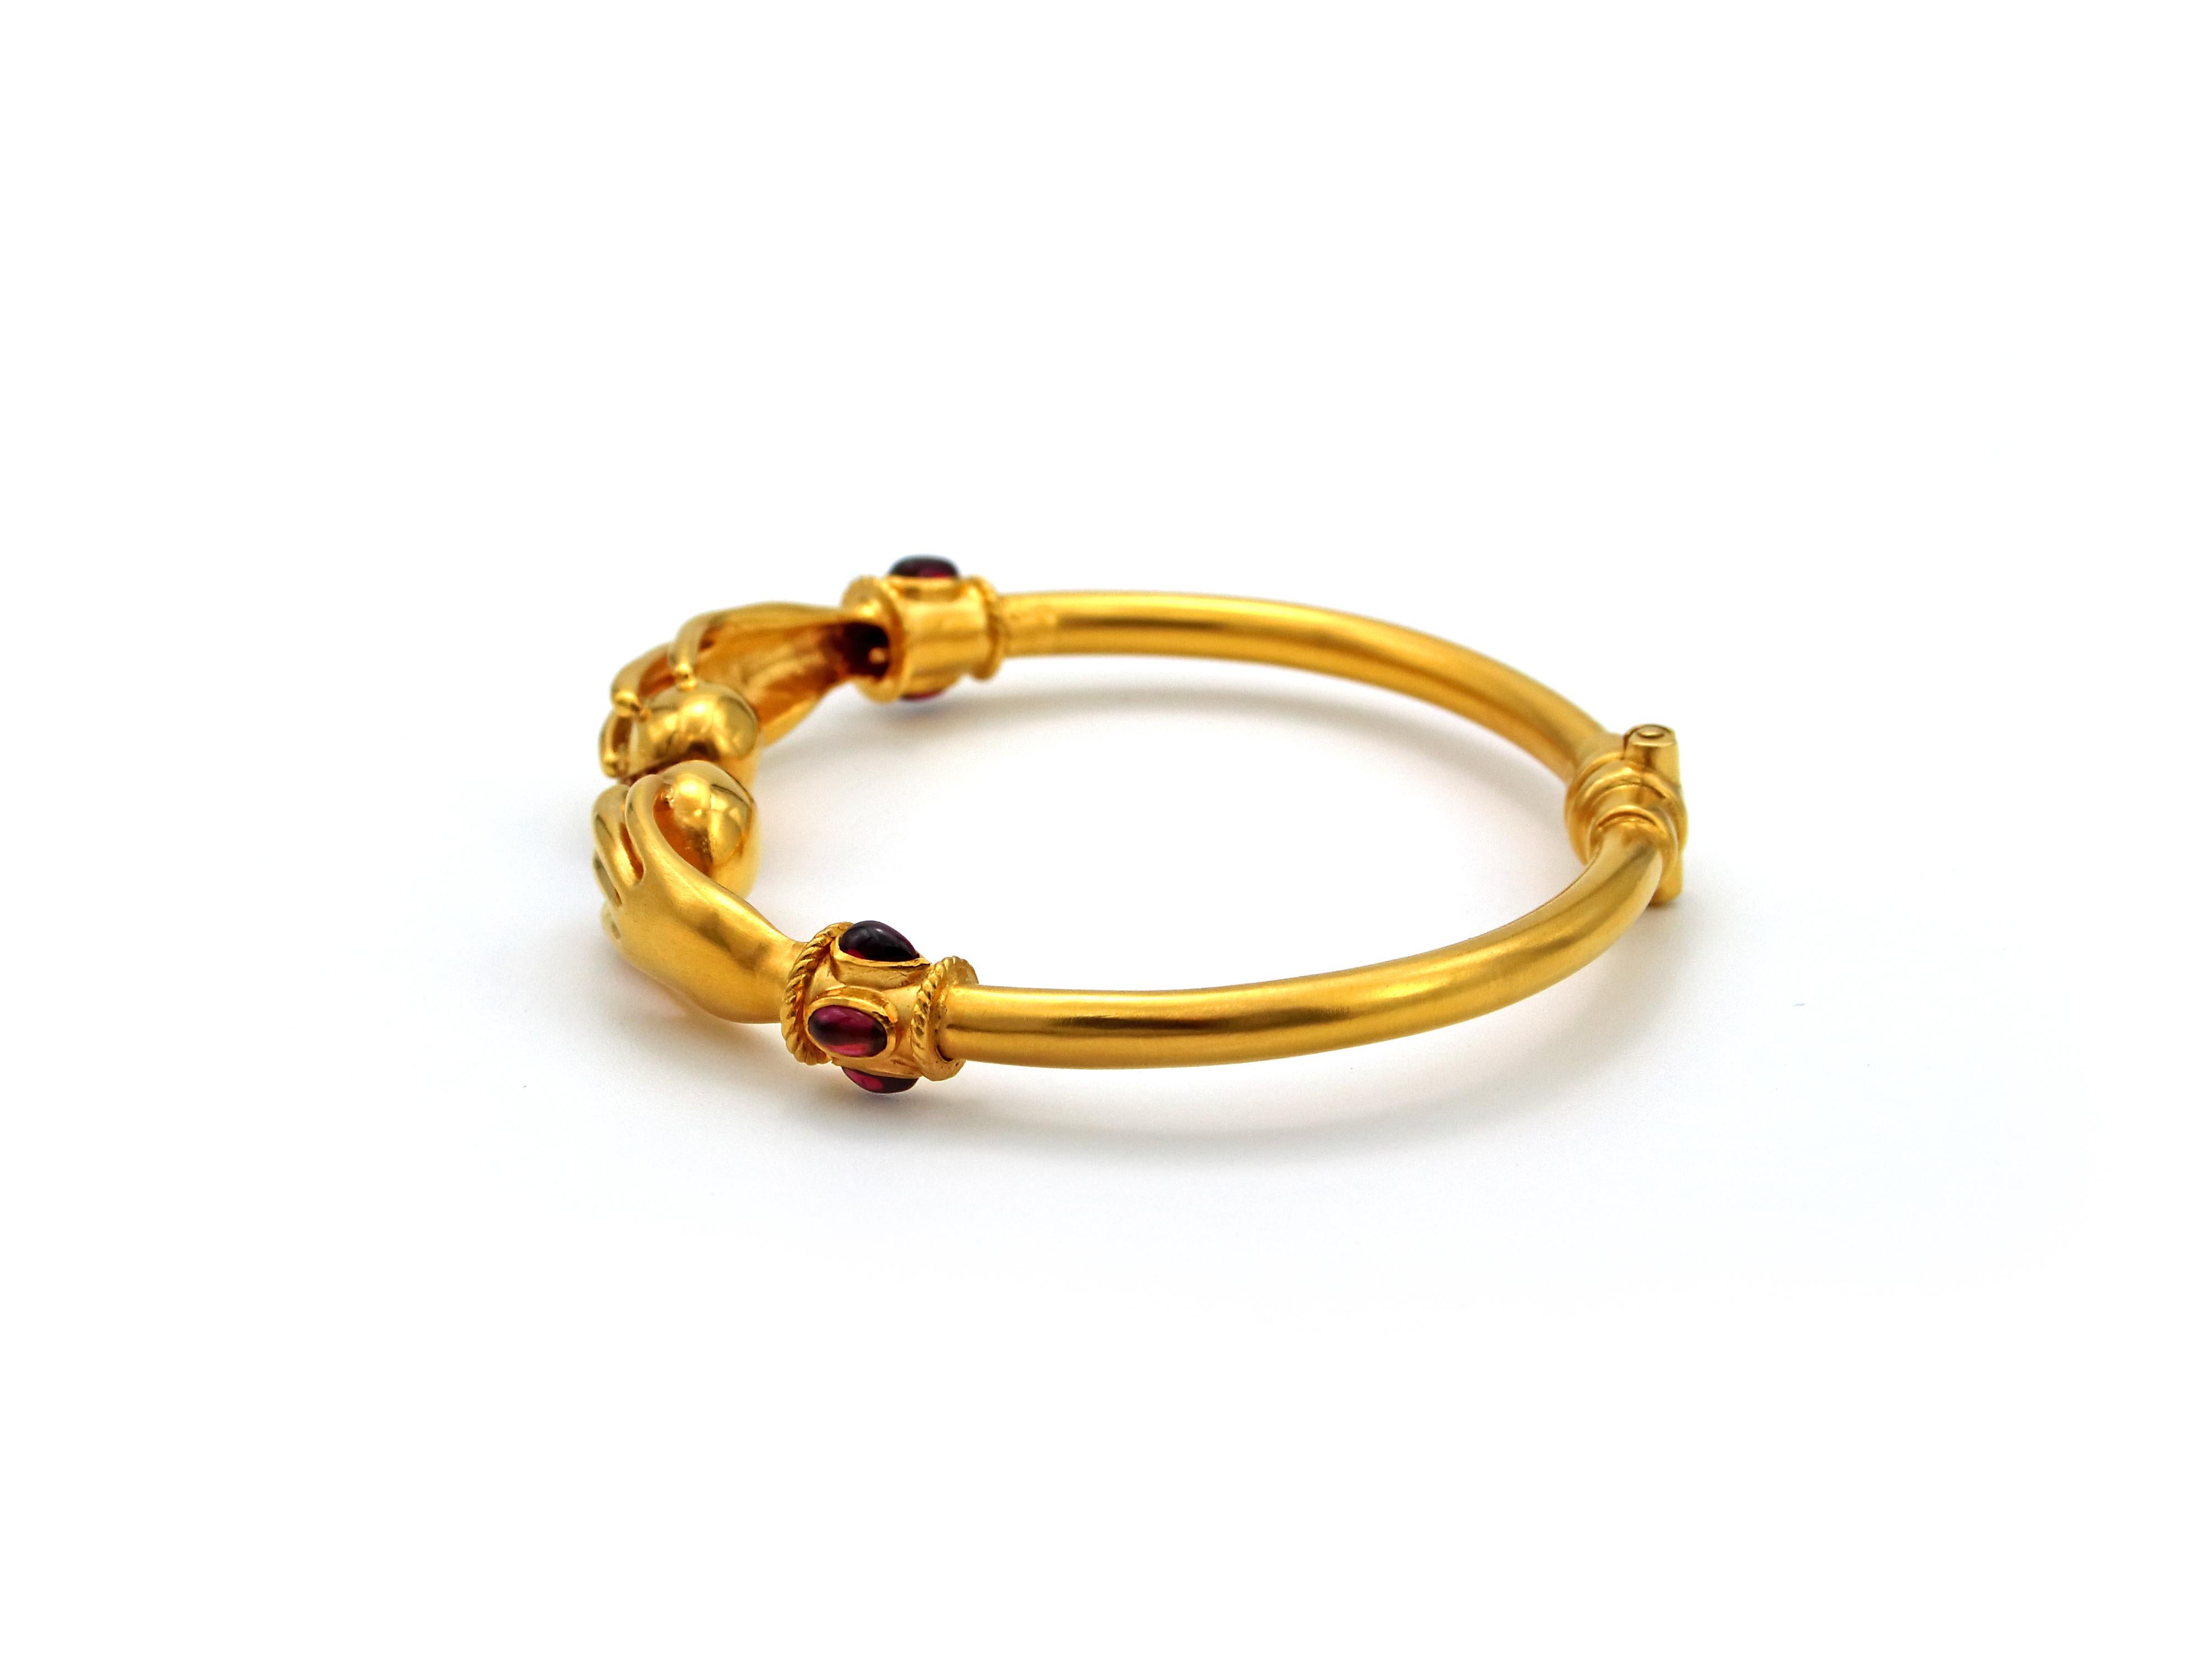 22k gold bracelet price in ksa